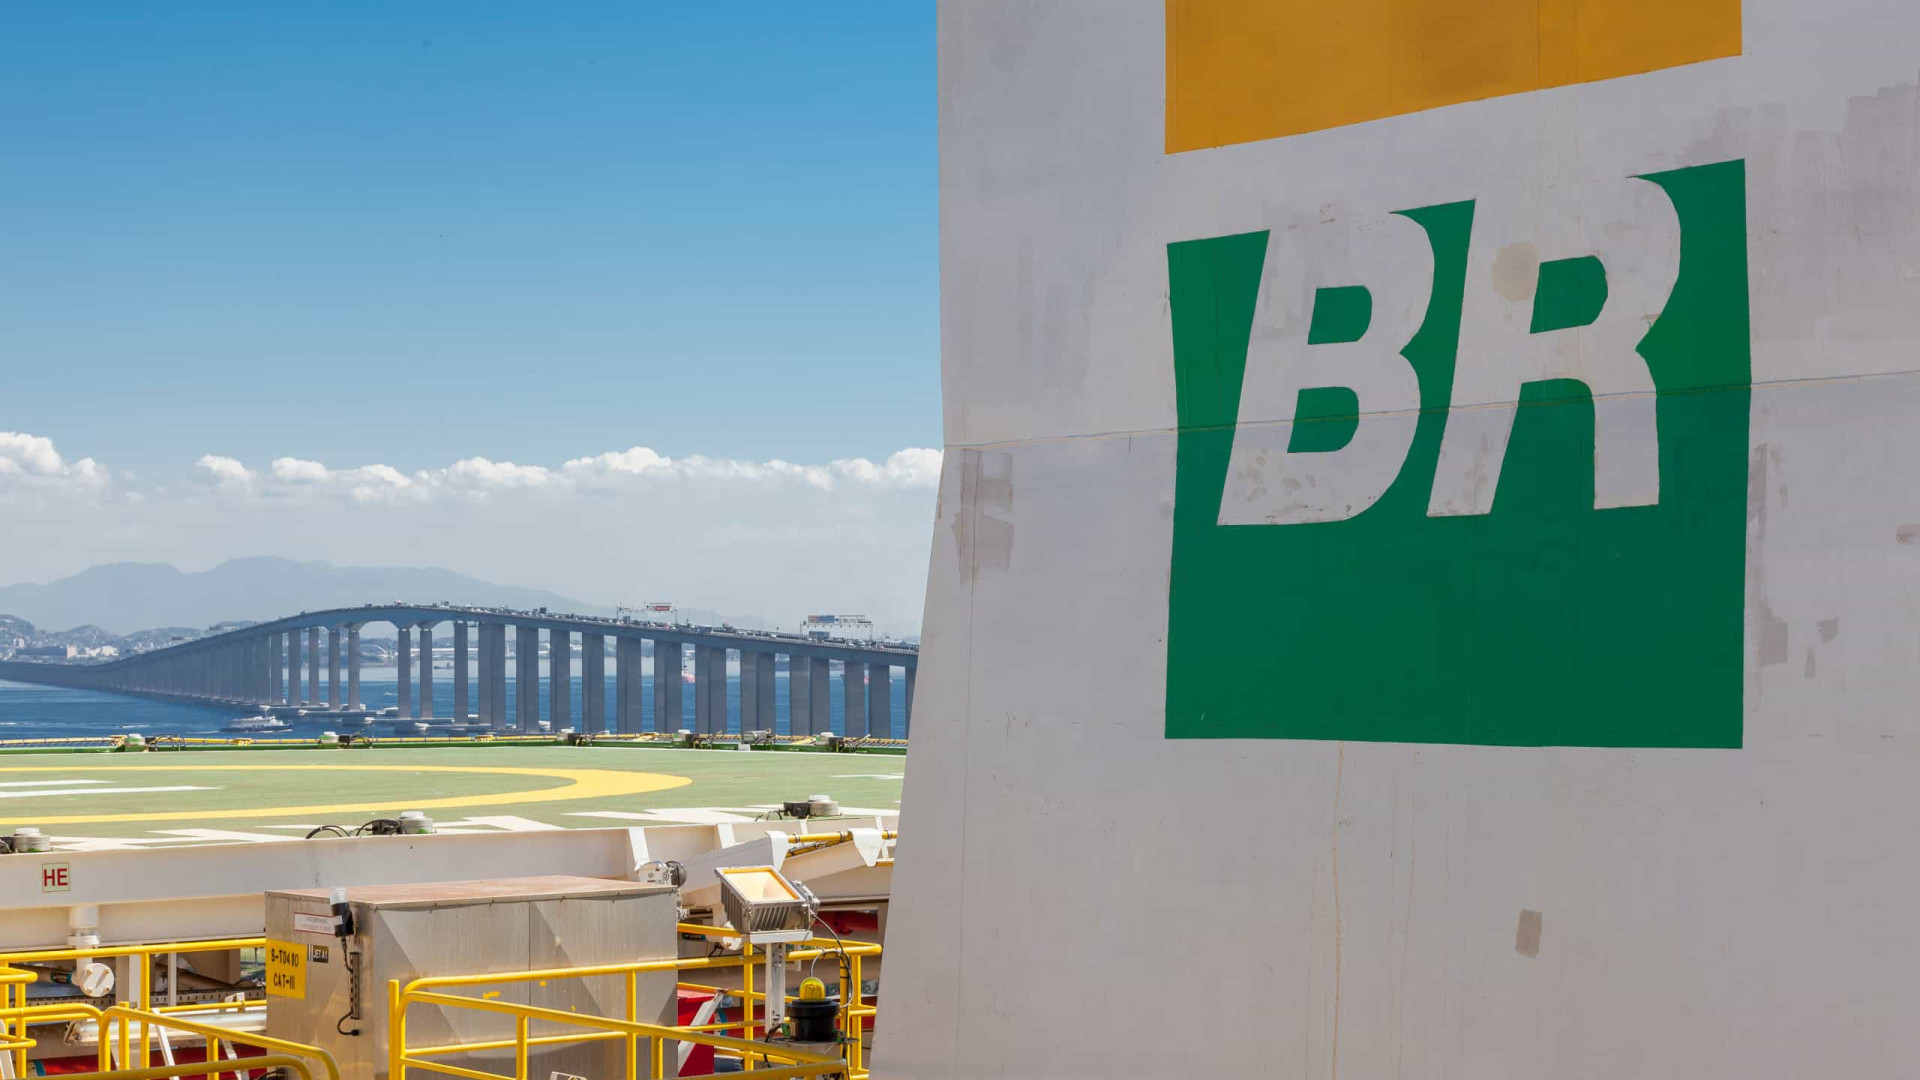 Petrobras reduz em 3% preço da gasolina para distribuidoras